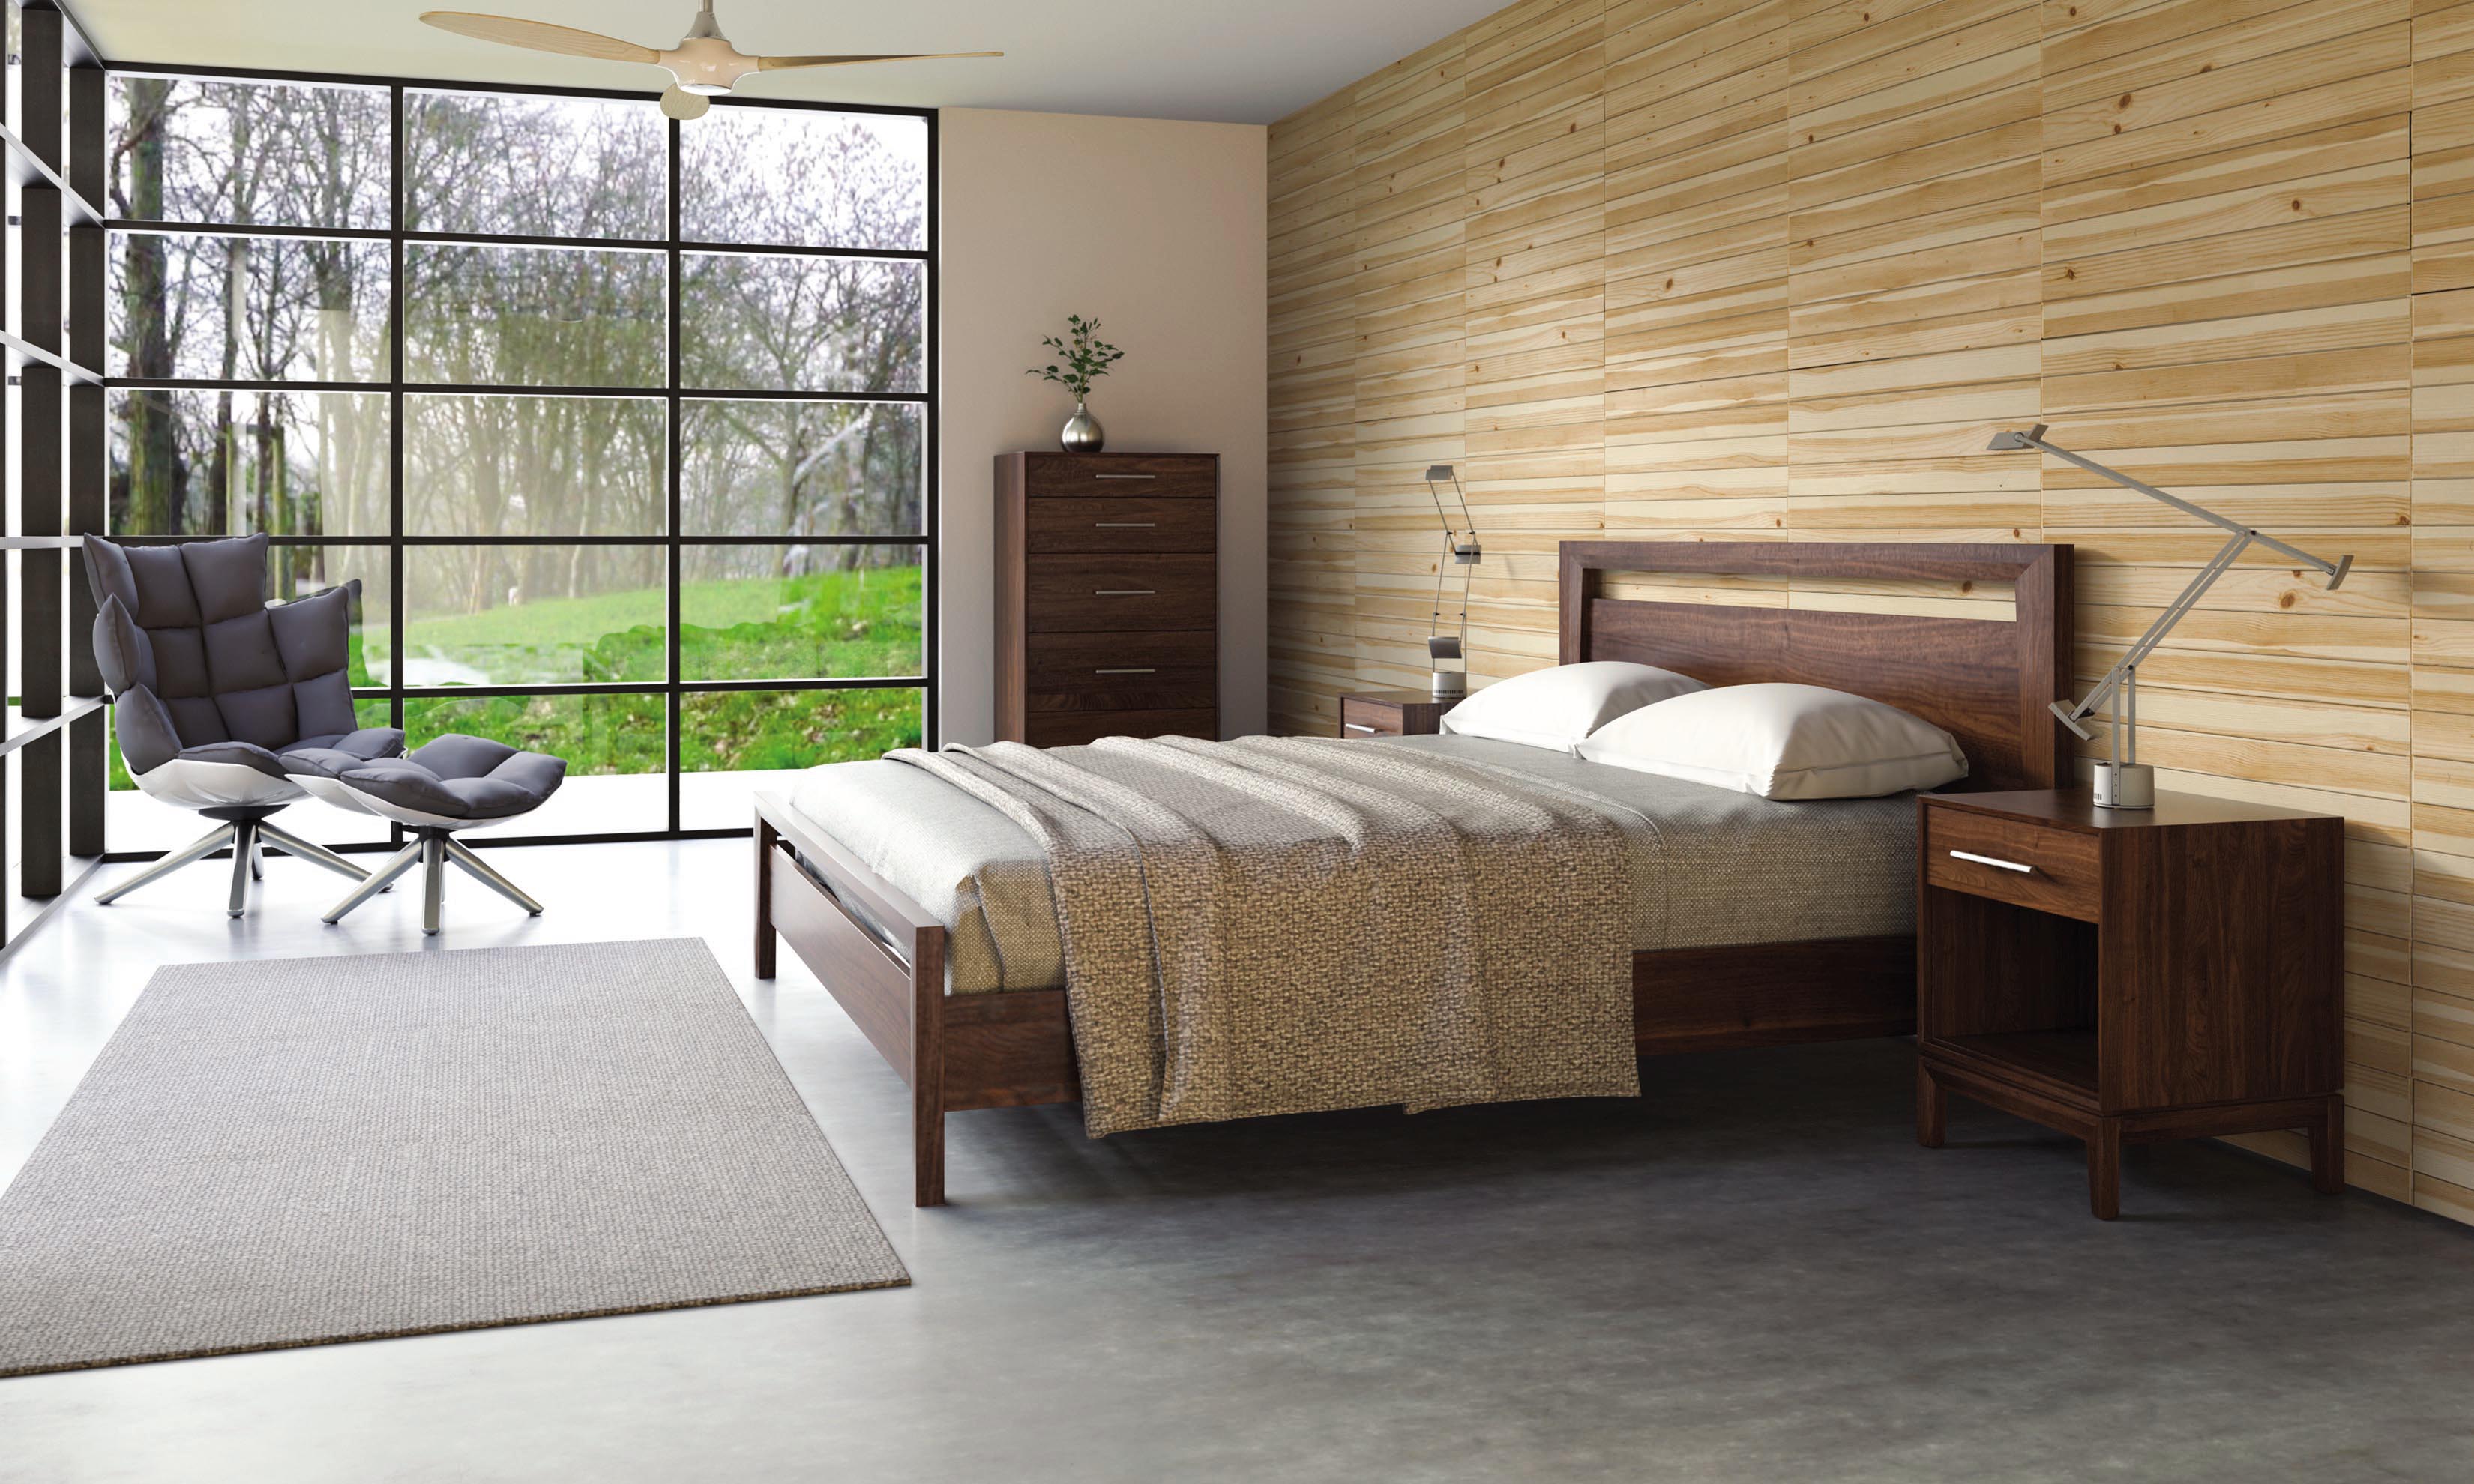 burlington vermont bedroom furniture